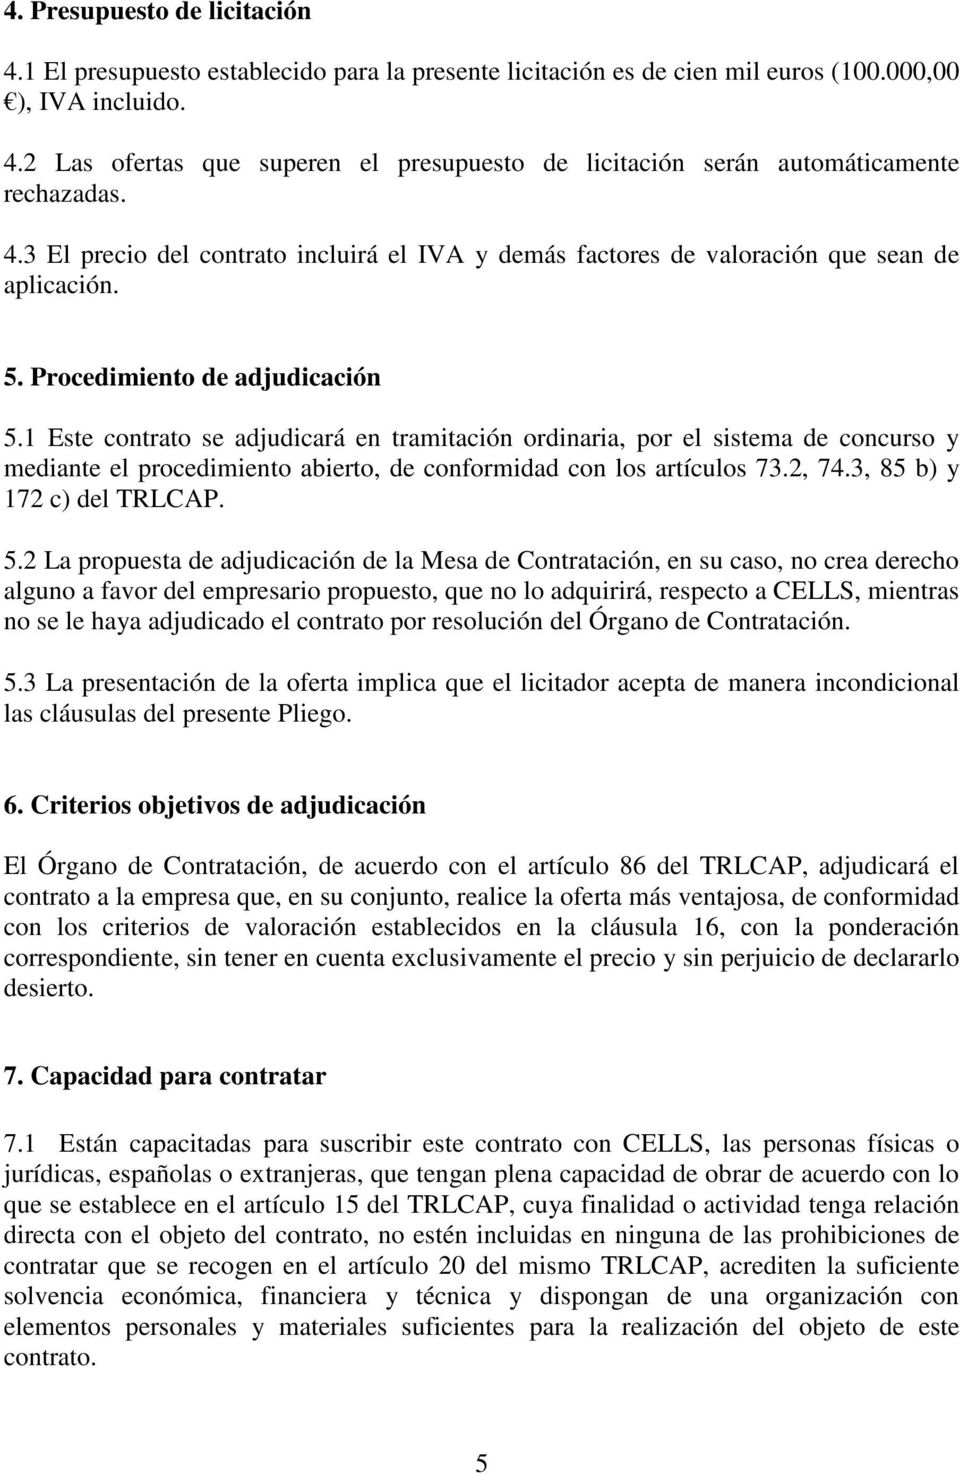 1 Este contrato se adjudicará en tramitación ordinaria, por el sistema de concurso y mediante el procedimiento abierto, de conformidad con los artículos 73.2, 74.3, 85 b) y 172 c) del TRLCAP. 5.